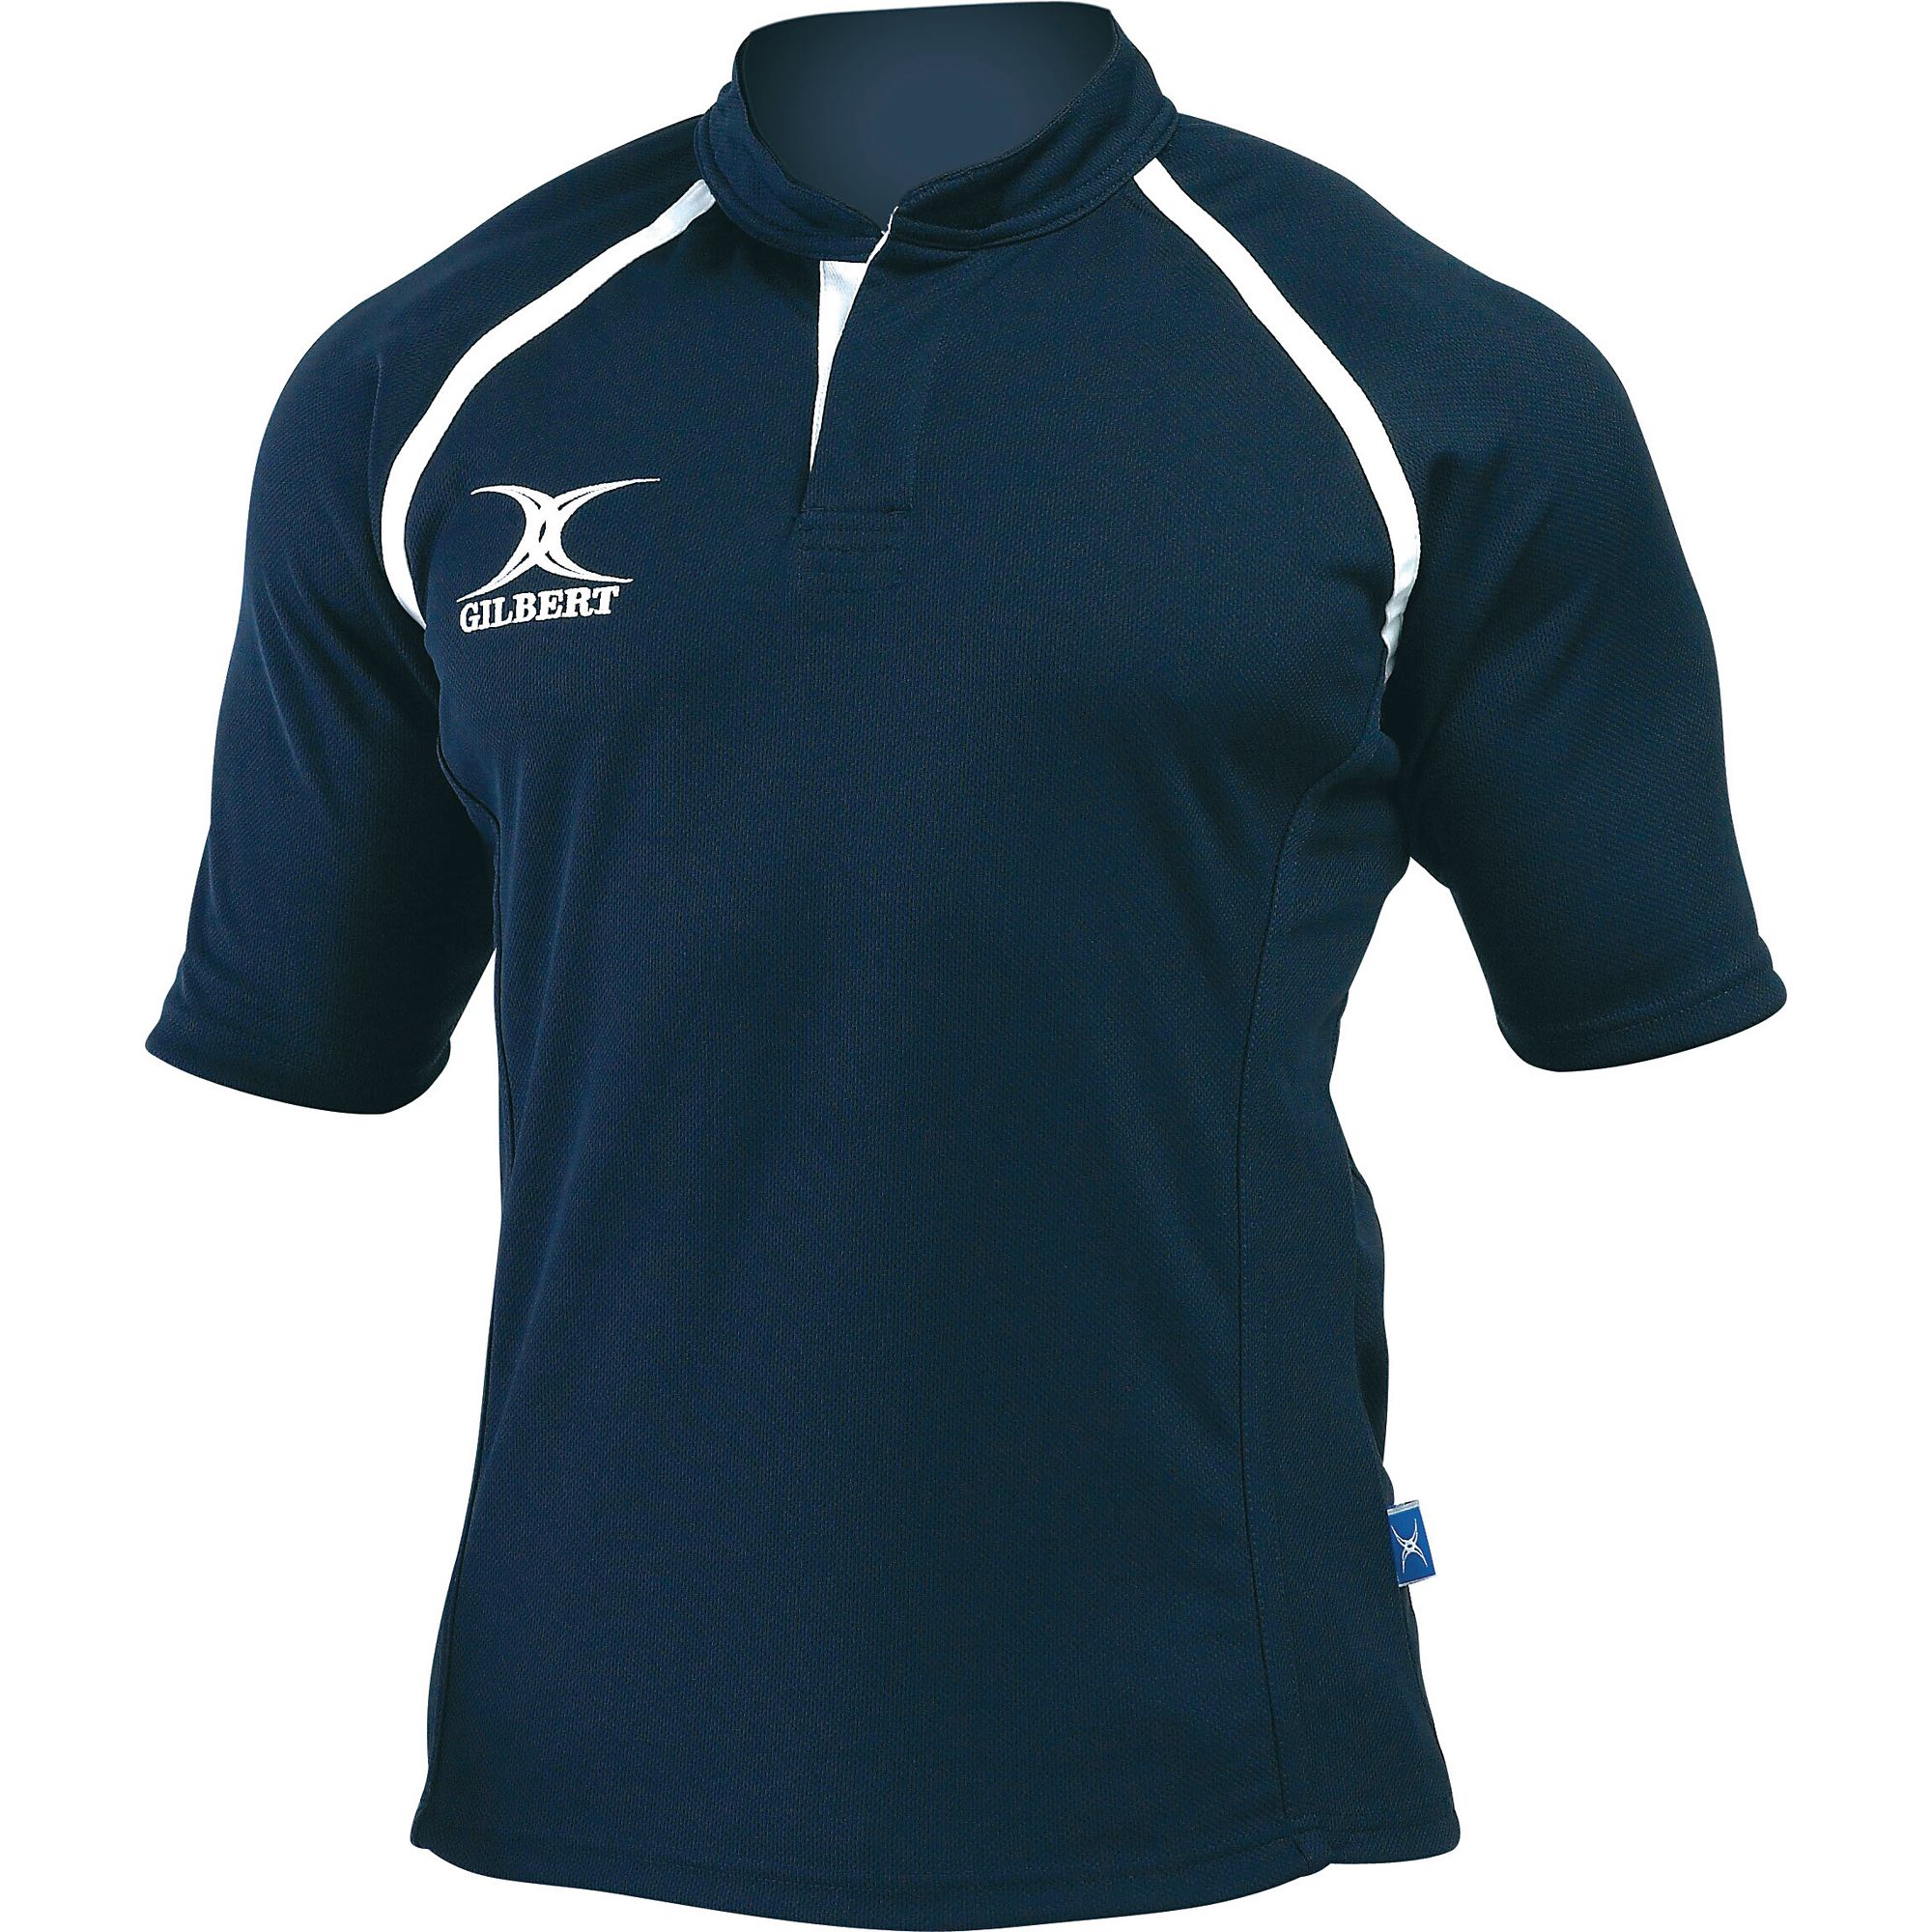 Gilbert Plain Rugby Shirt 24in Navy